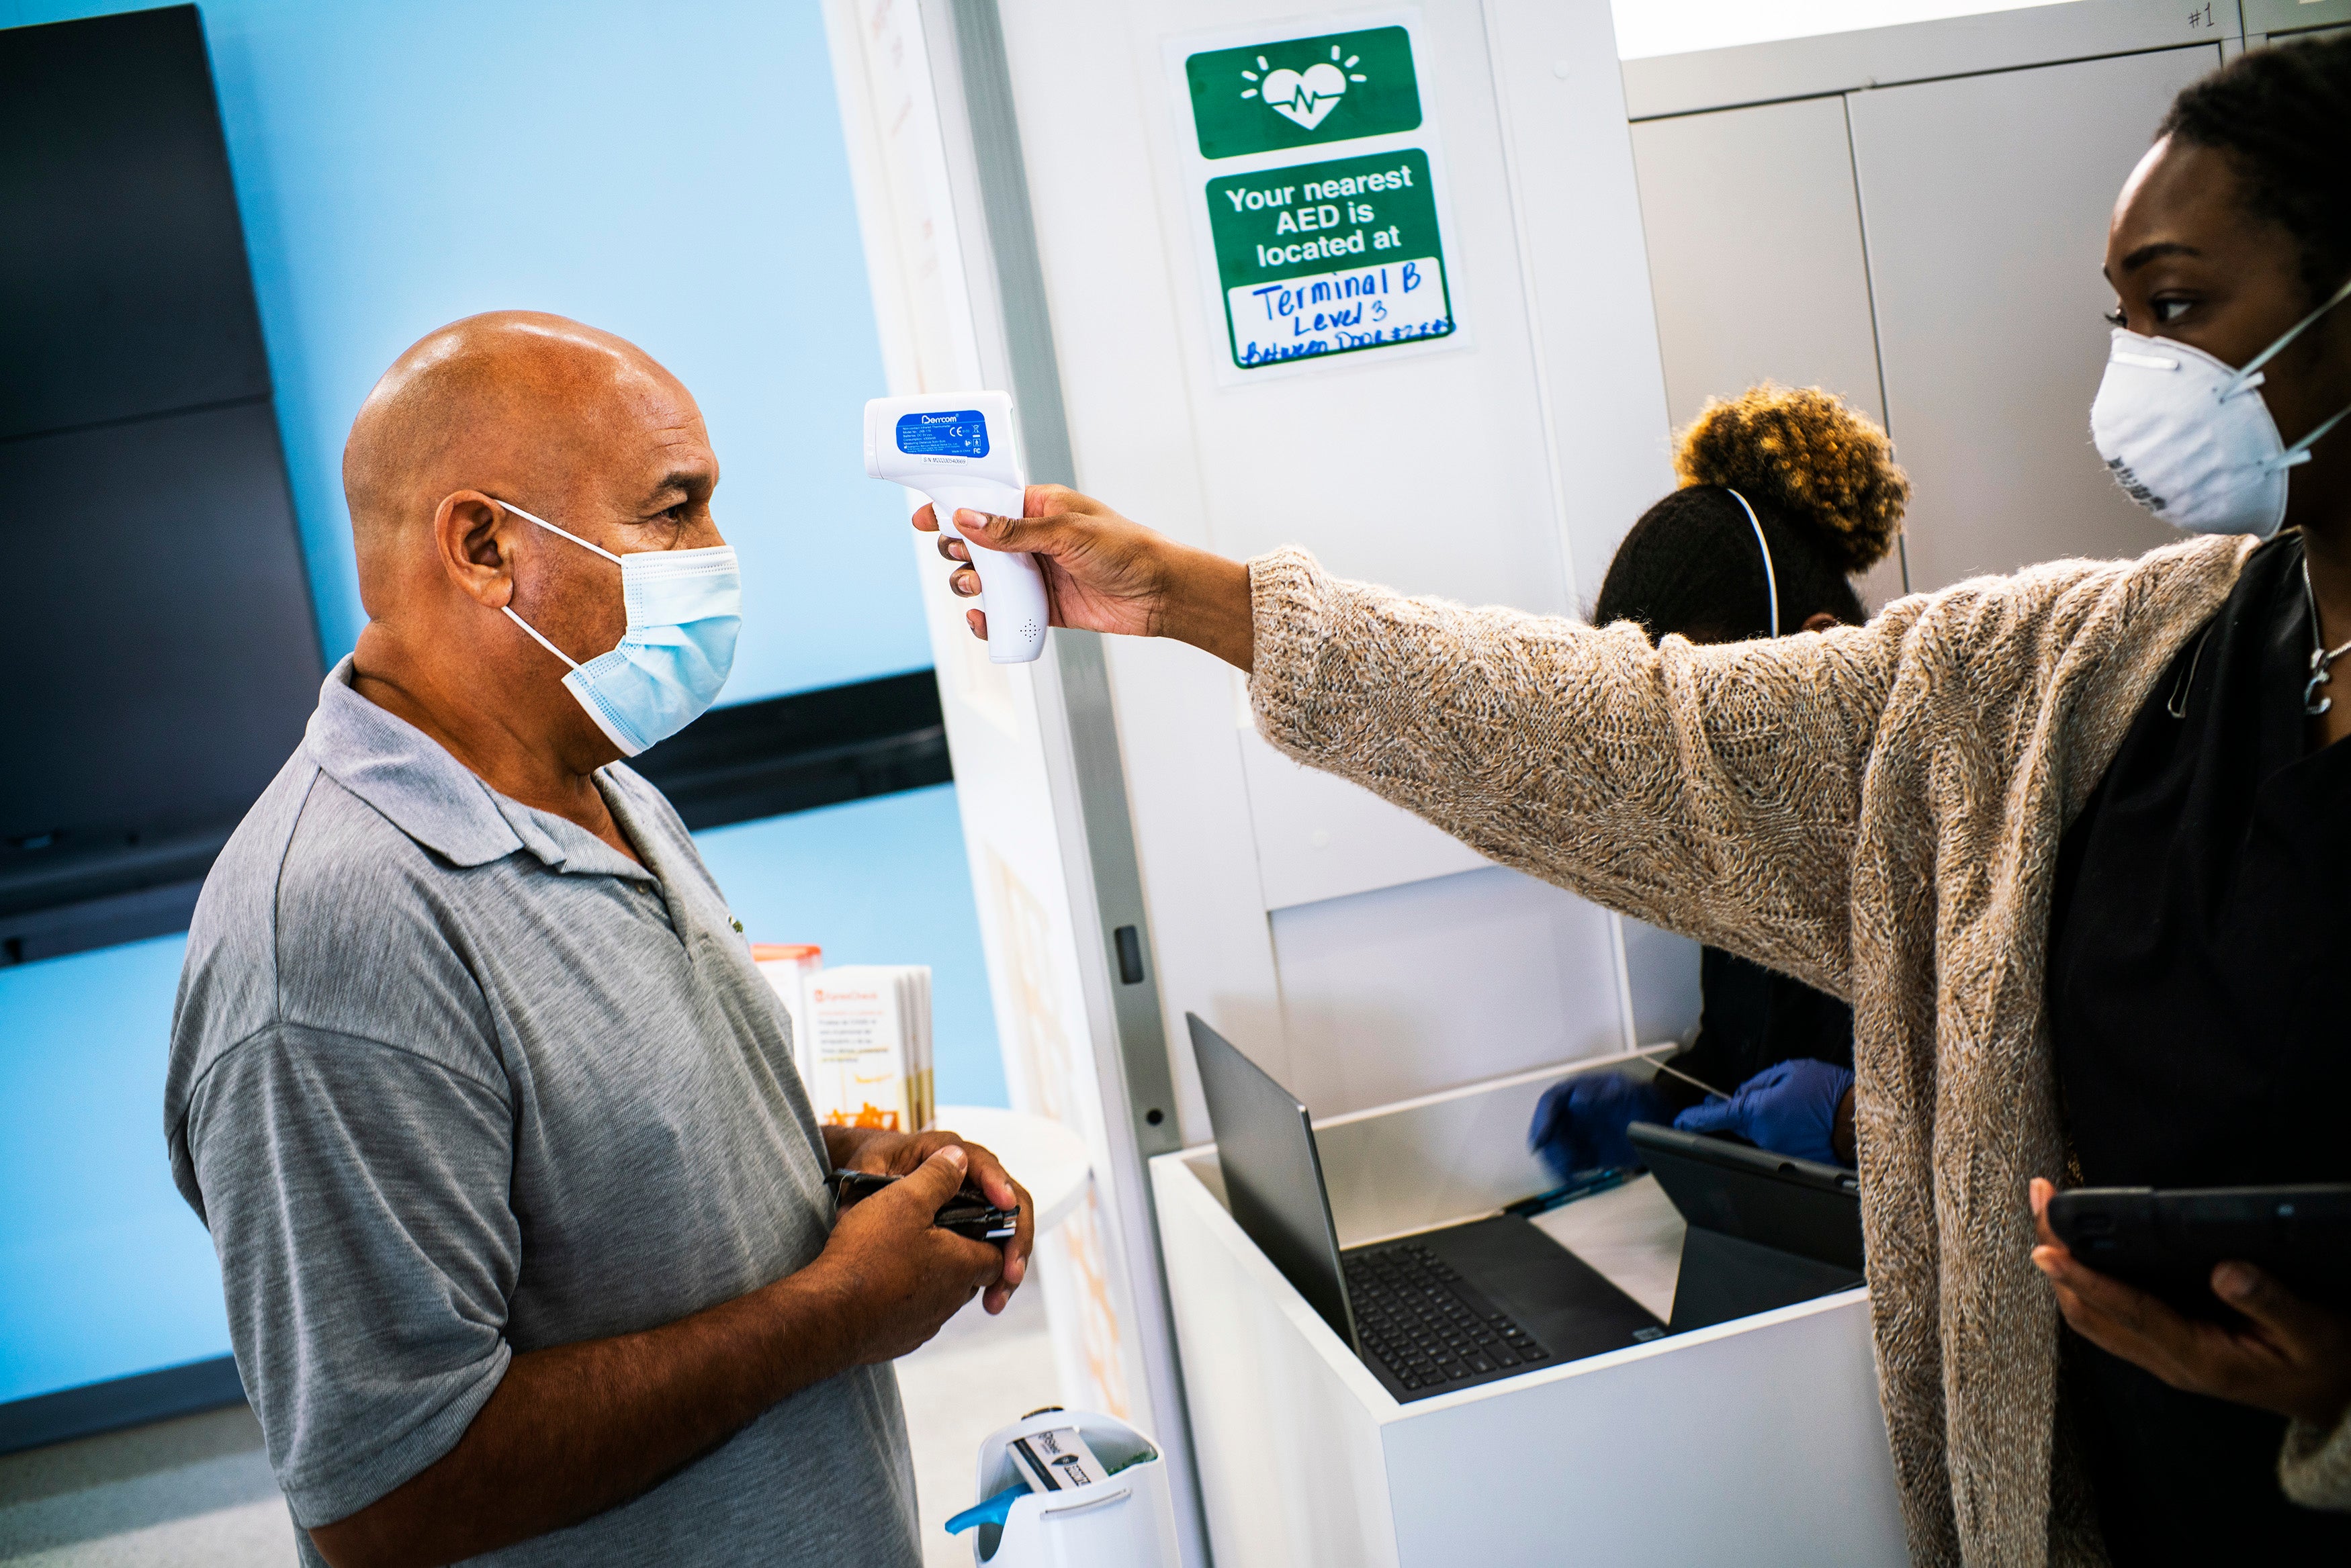 Airport Coronavirus Symptom Screening Is Not Effective According to the CDC